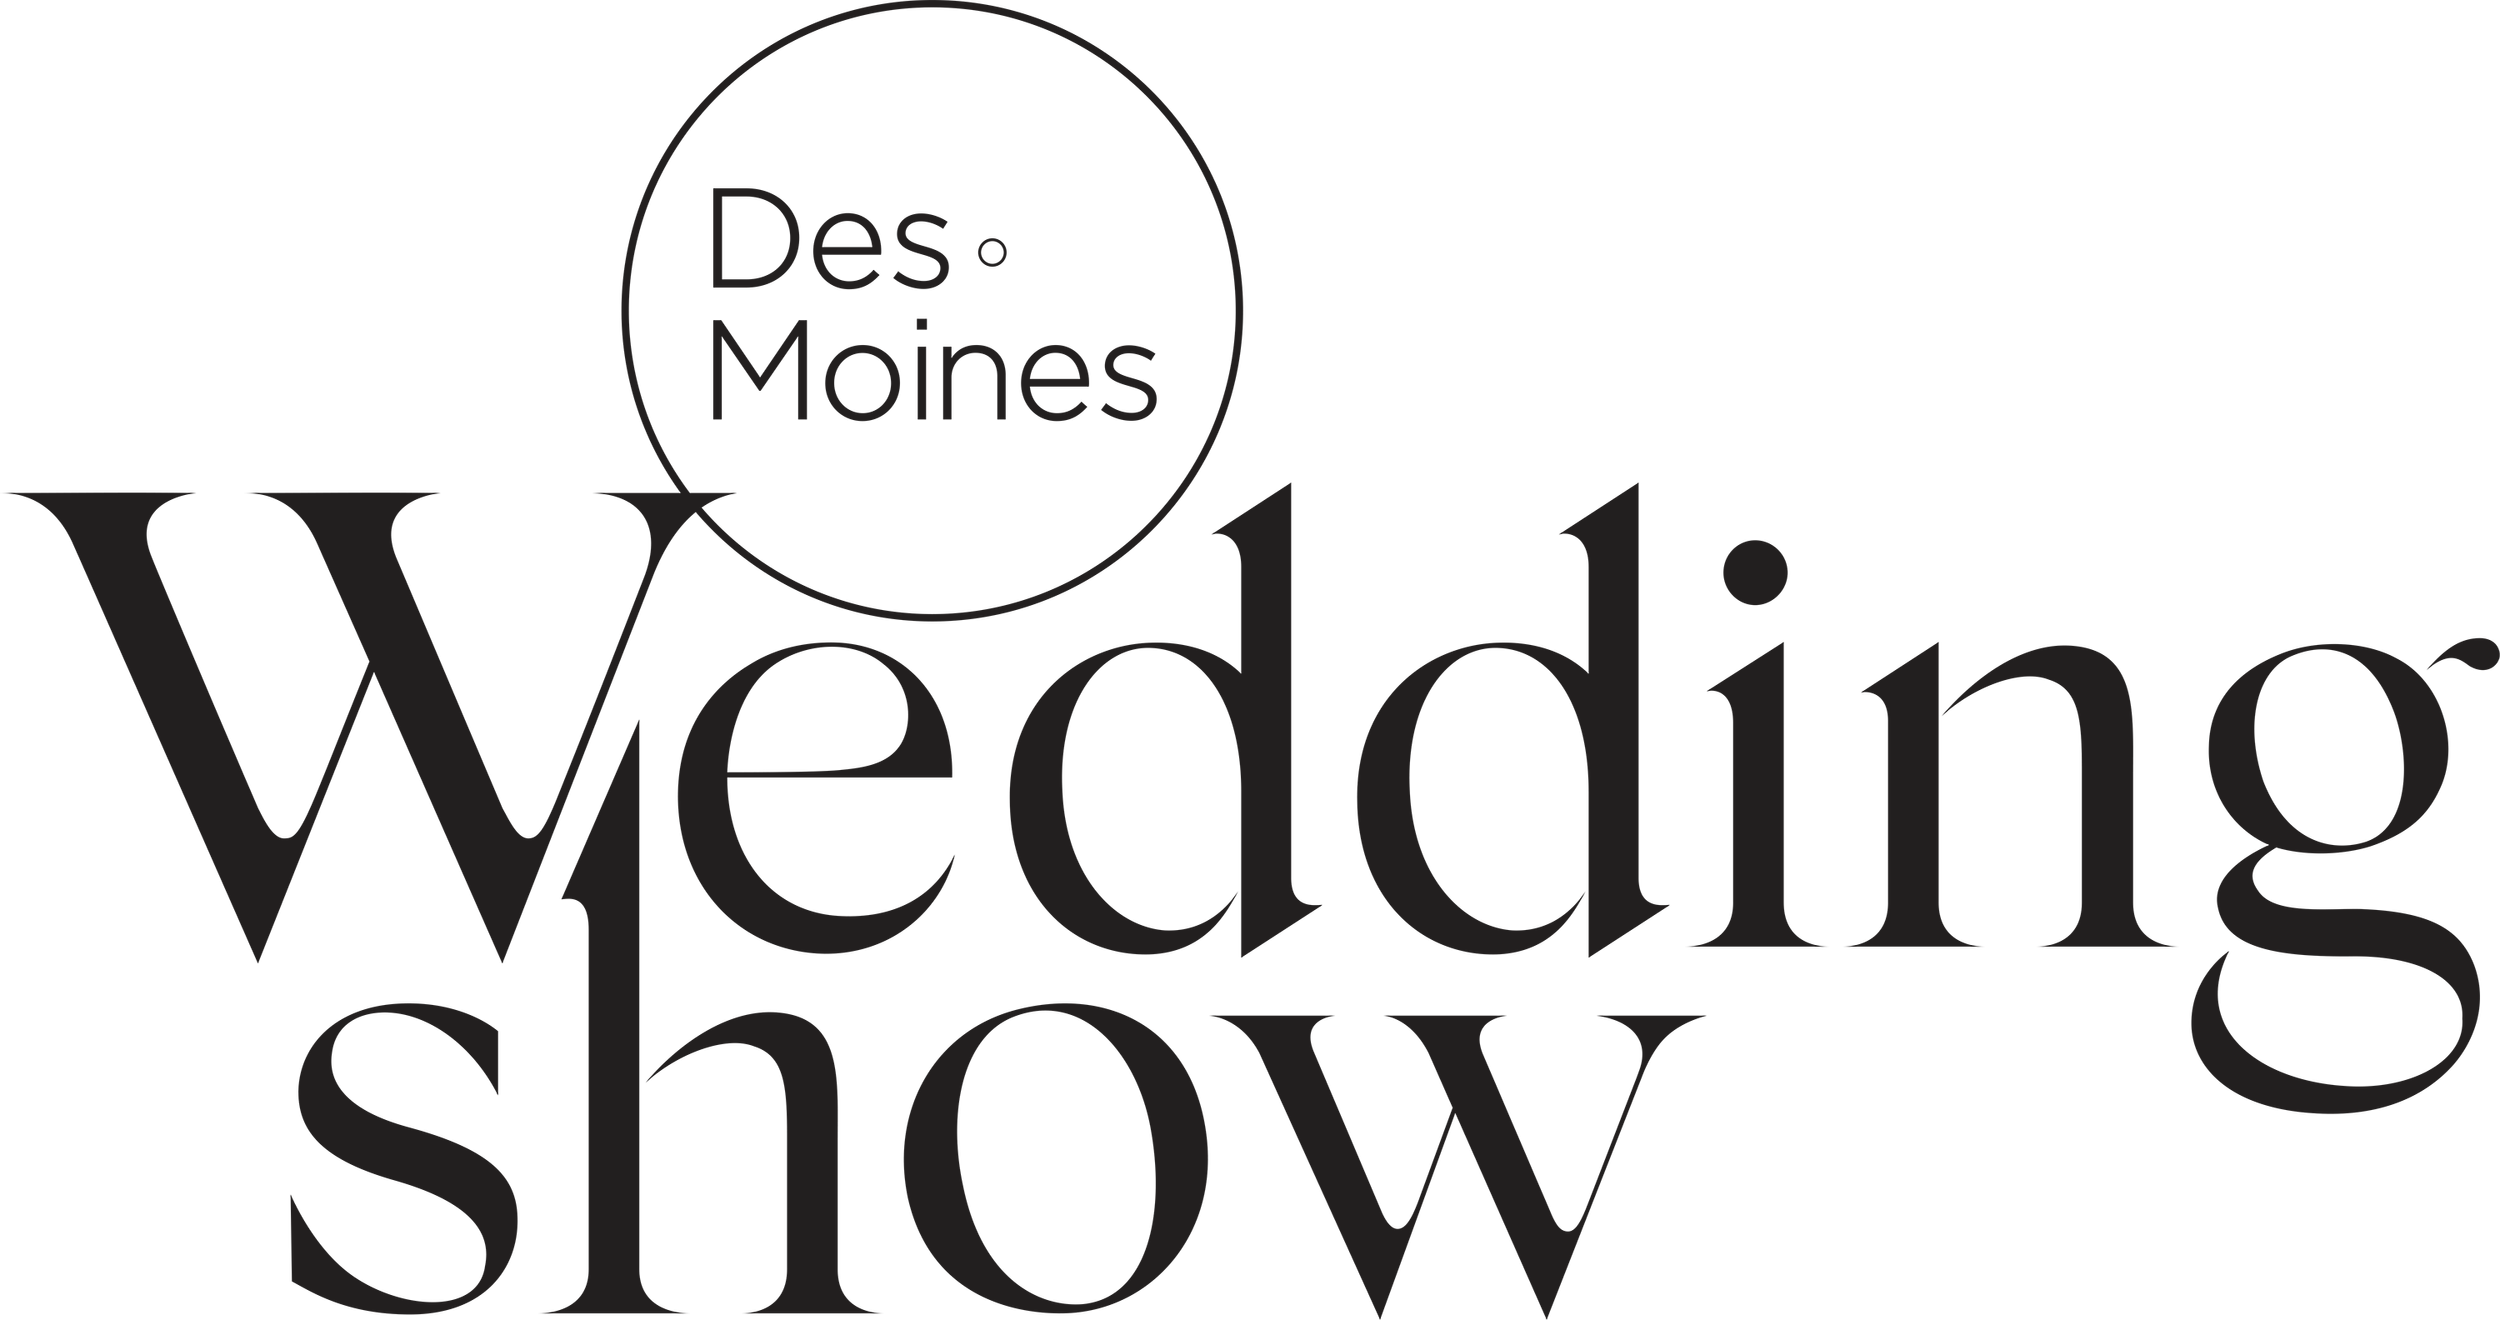 DSM_WeddingShow_Logo_Black_sm.png